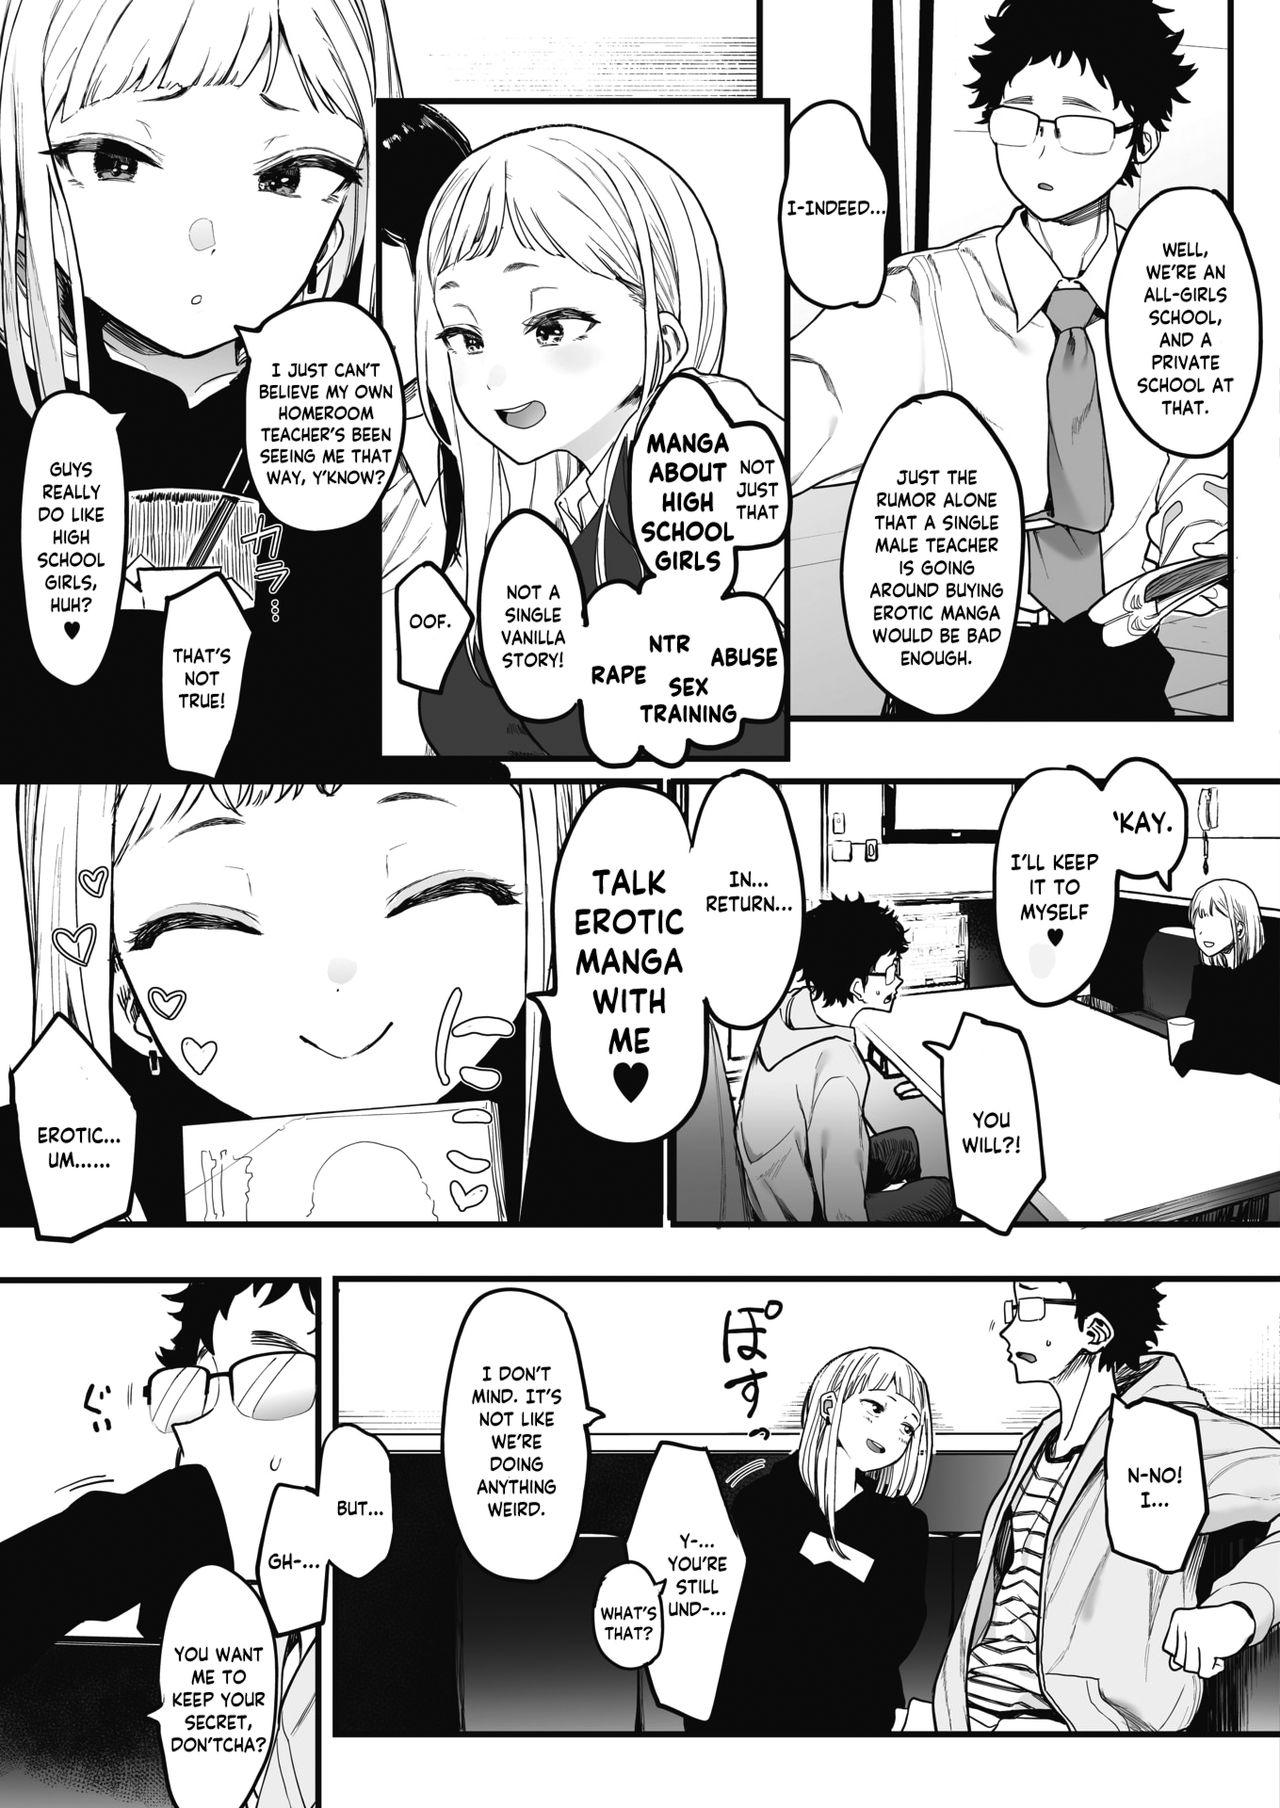 EIGHTMANsensei no okage de Kanojo ga dekimashita! | I Got a Girlfriend with Eightman-sensei's Help! 4